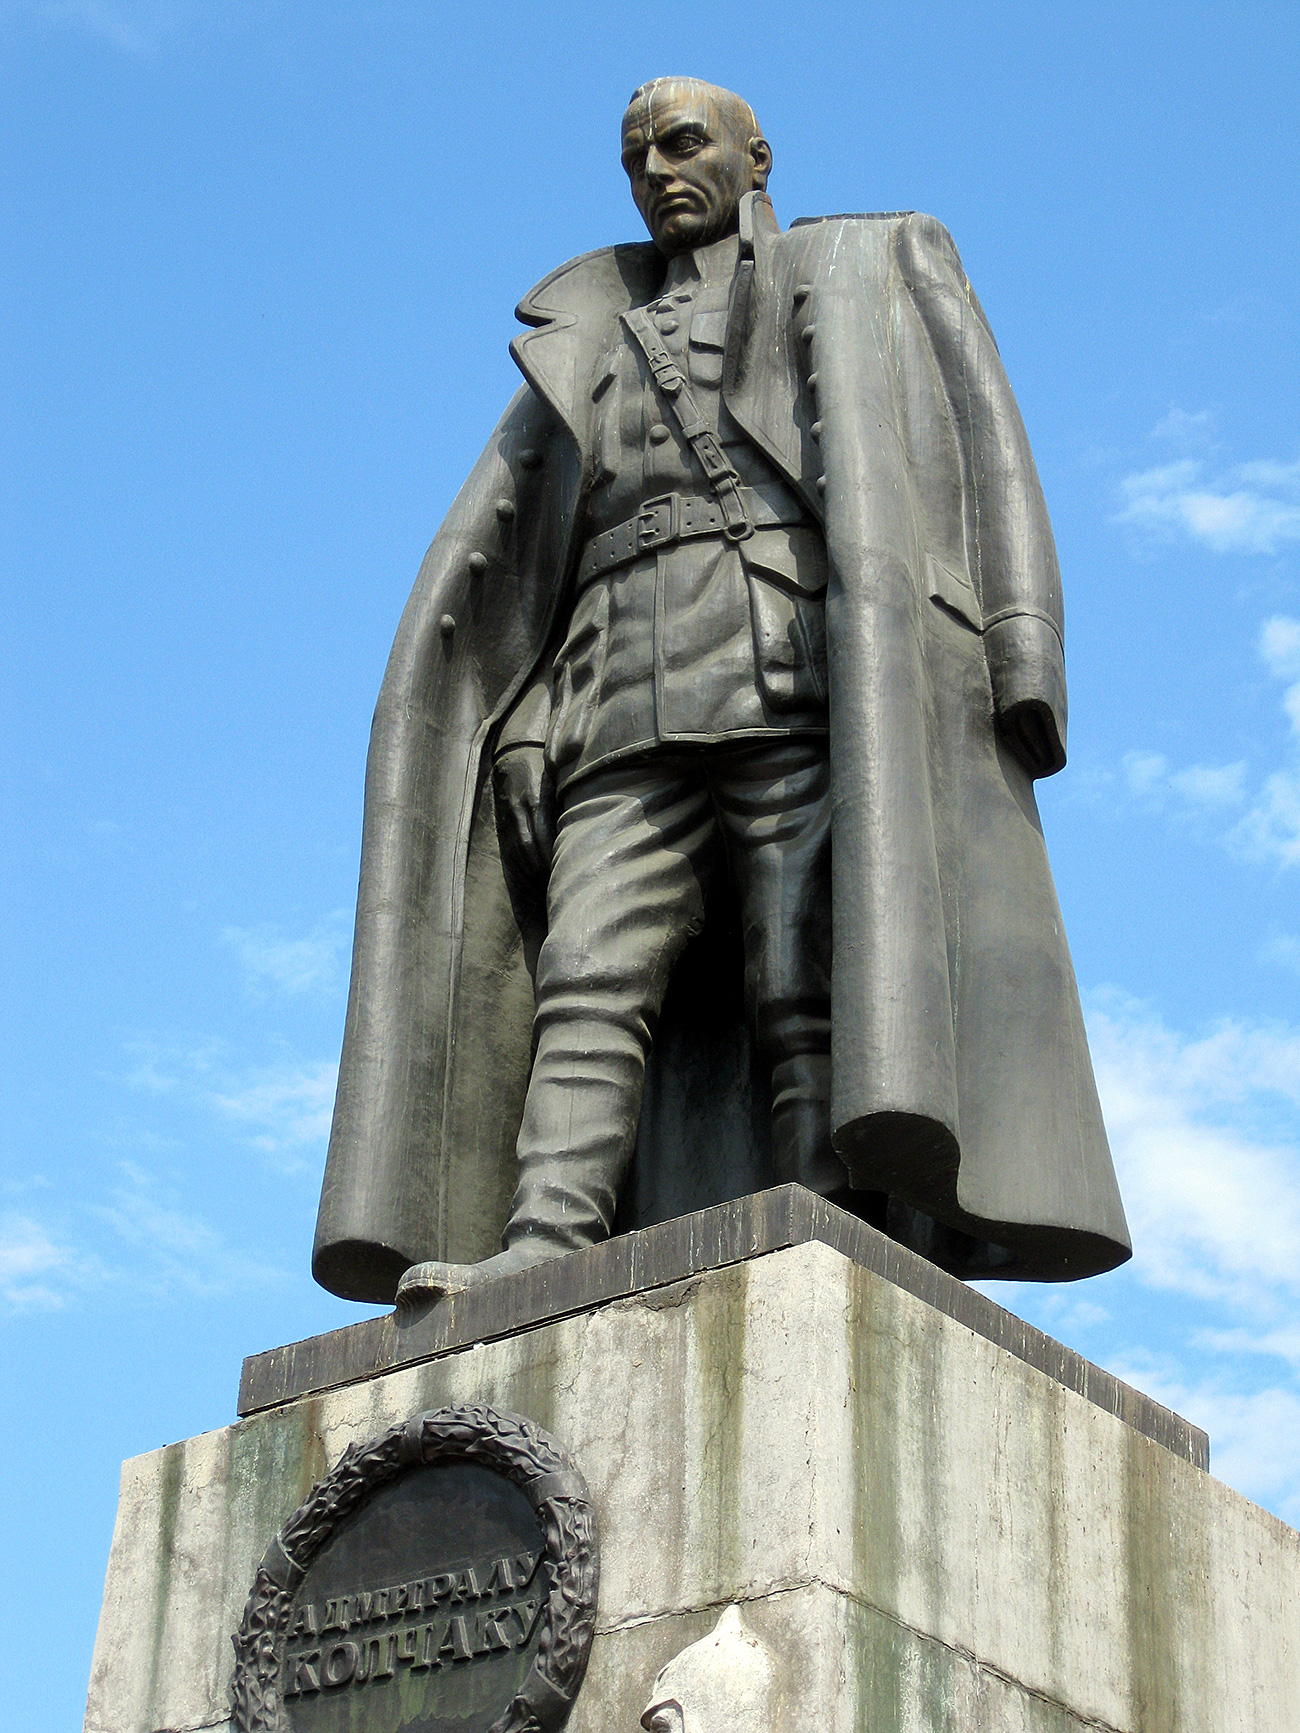 Споменик Александру Колчаку у Иркутску. Извор: Wikipedia.org